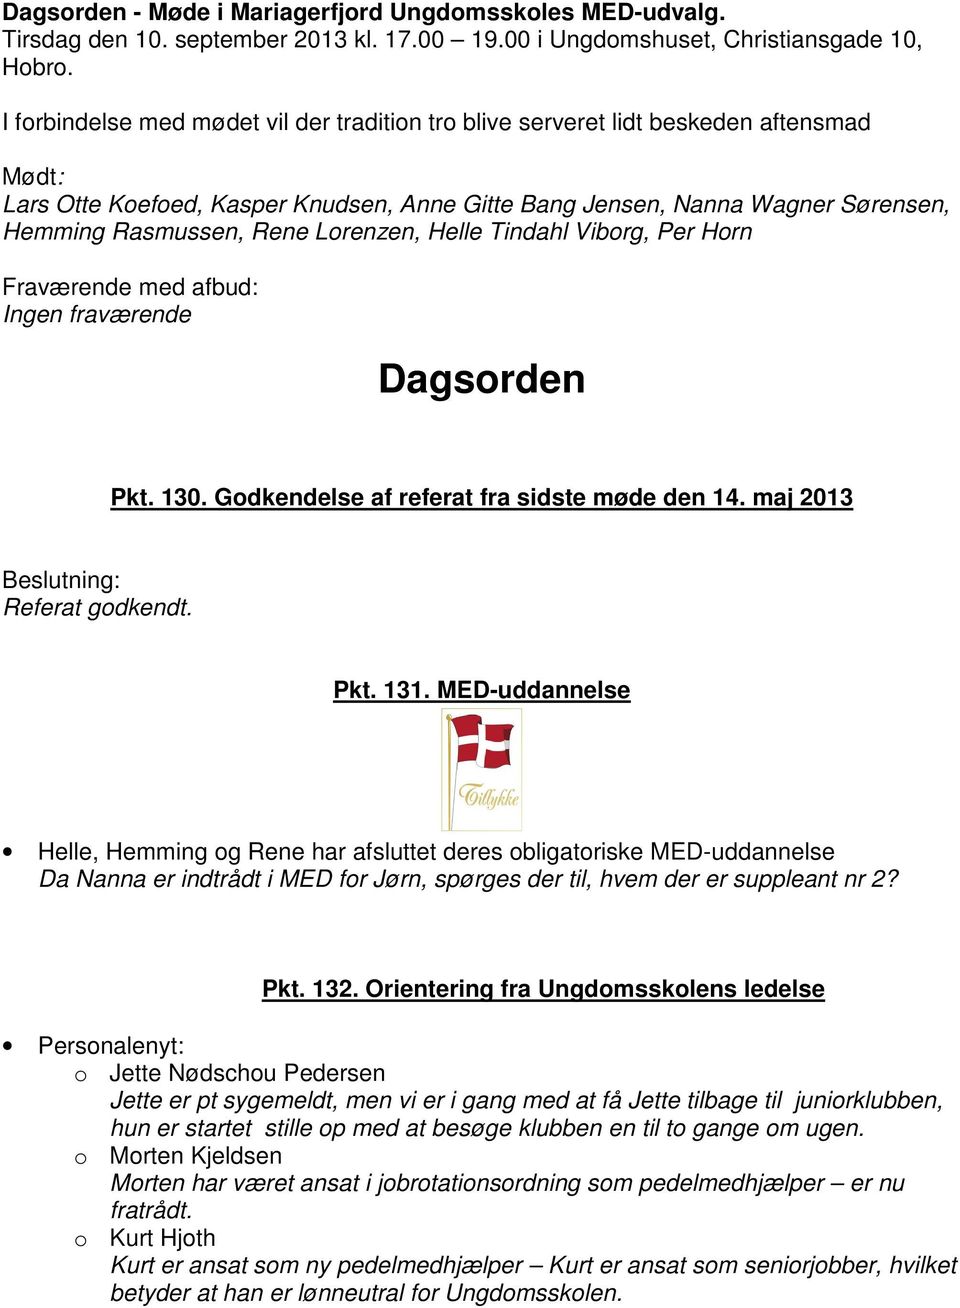 Lorenzen, Helle Tindahl Viborg, Per Horn Fraværende med afbud: Ingen fraværende Dagsorden Pkt. 130. Godkendelse af referat fra sidste møde den 14. maj 2013 Referat godkendt. Pkt. 131.